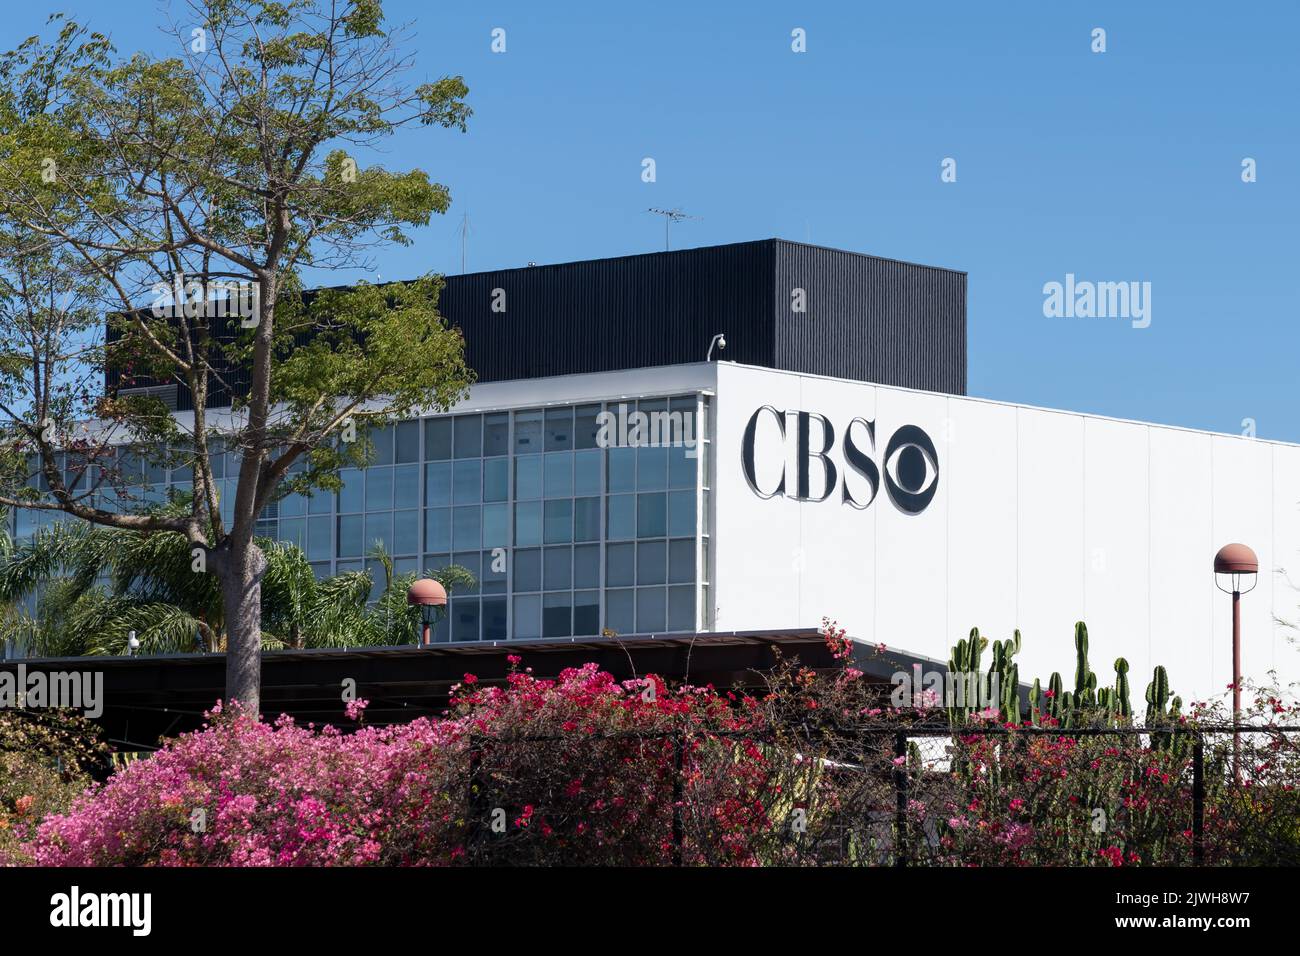 Los Angeles, Ca, USA - 6. Juli 2022: Nahaufnahme des CBS-Logos auf dem Gebäude in der CBS Television City in Los Angeles, CA, USA. Stockfoto